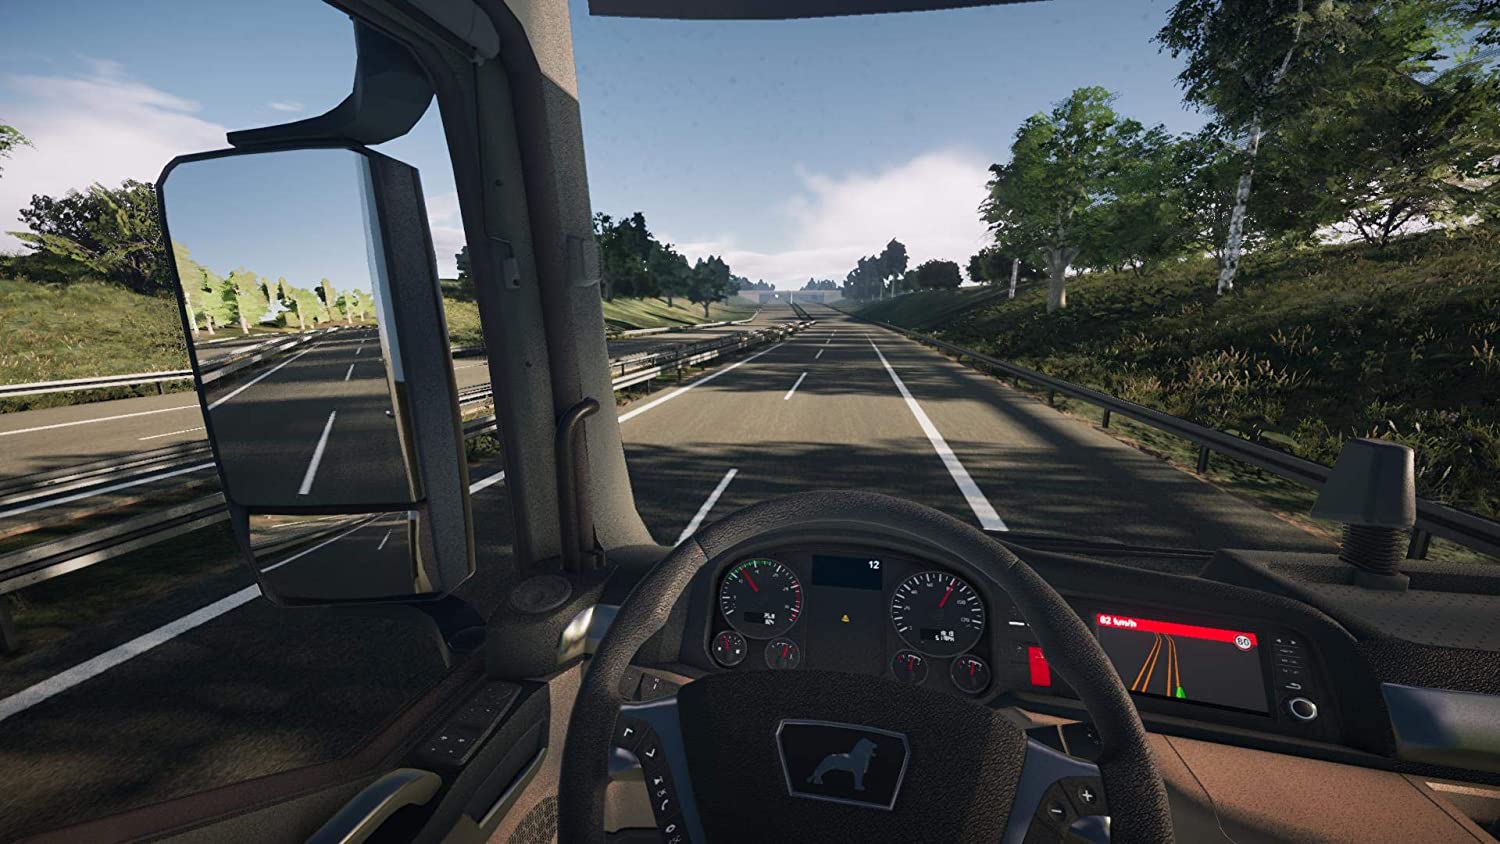 Симуляторы на ps3. On the Road – Truck Simulation игра. Truck Simulator ps4. On the Road Truck Simulator для PLAYSTATION 4. Евро трак симулятор на ПС 4.